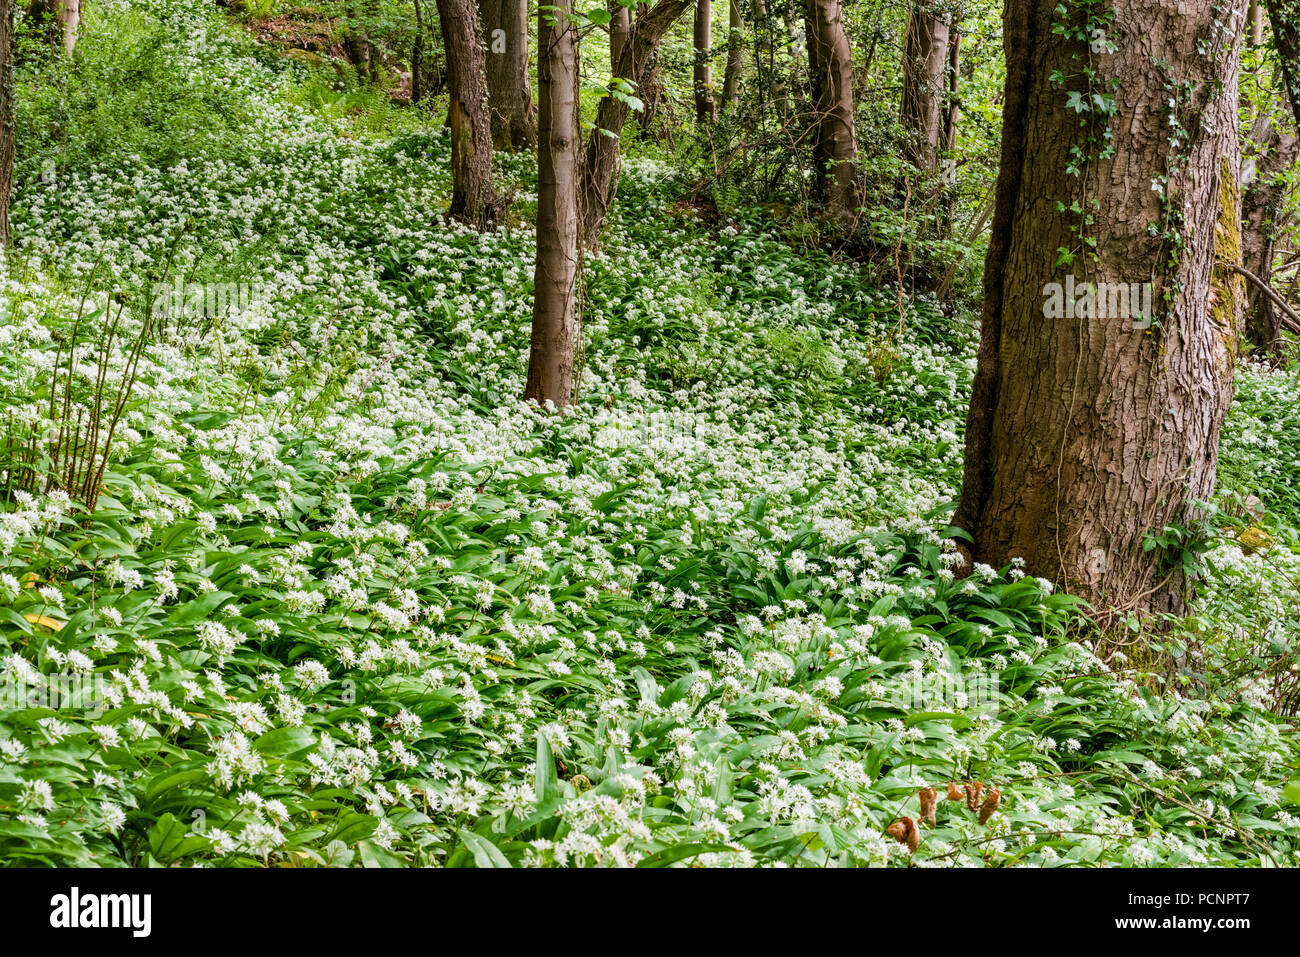 Aglio selvatico - Allium ursinum - noto anche come ramsons, di latifoglie, aglio Aglio in legno muniti di porro, o l'aglio orsino spesso si trovano in antichi boschi. Foto Stock